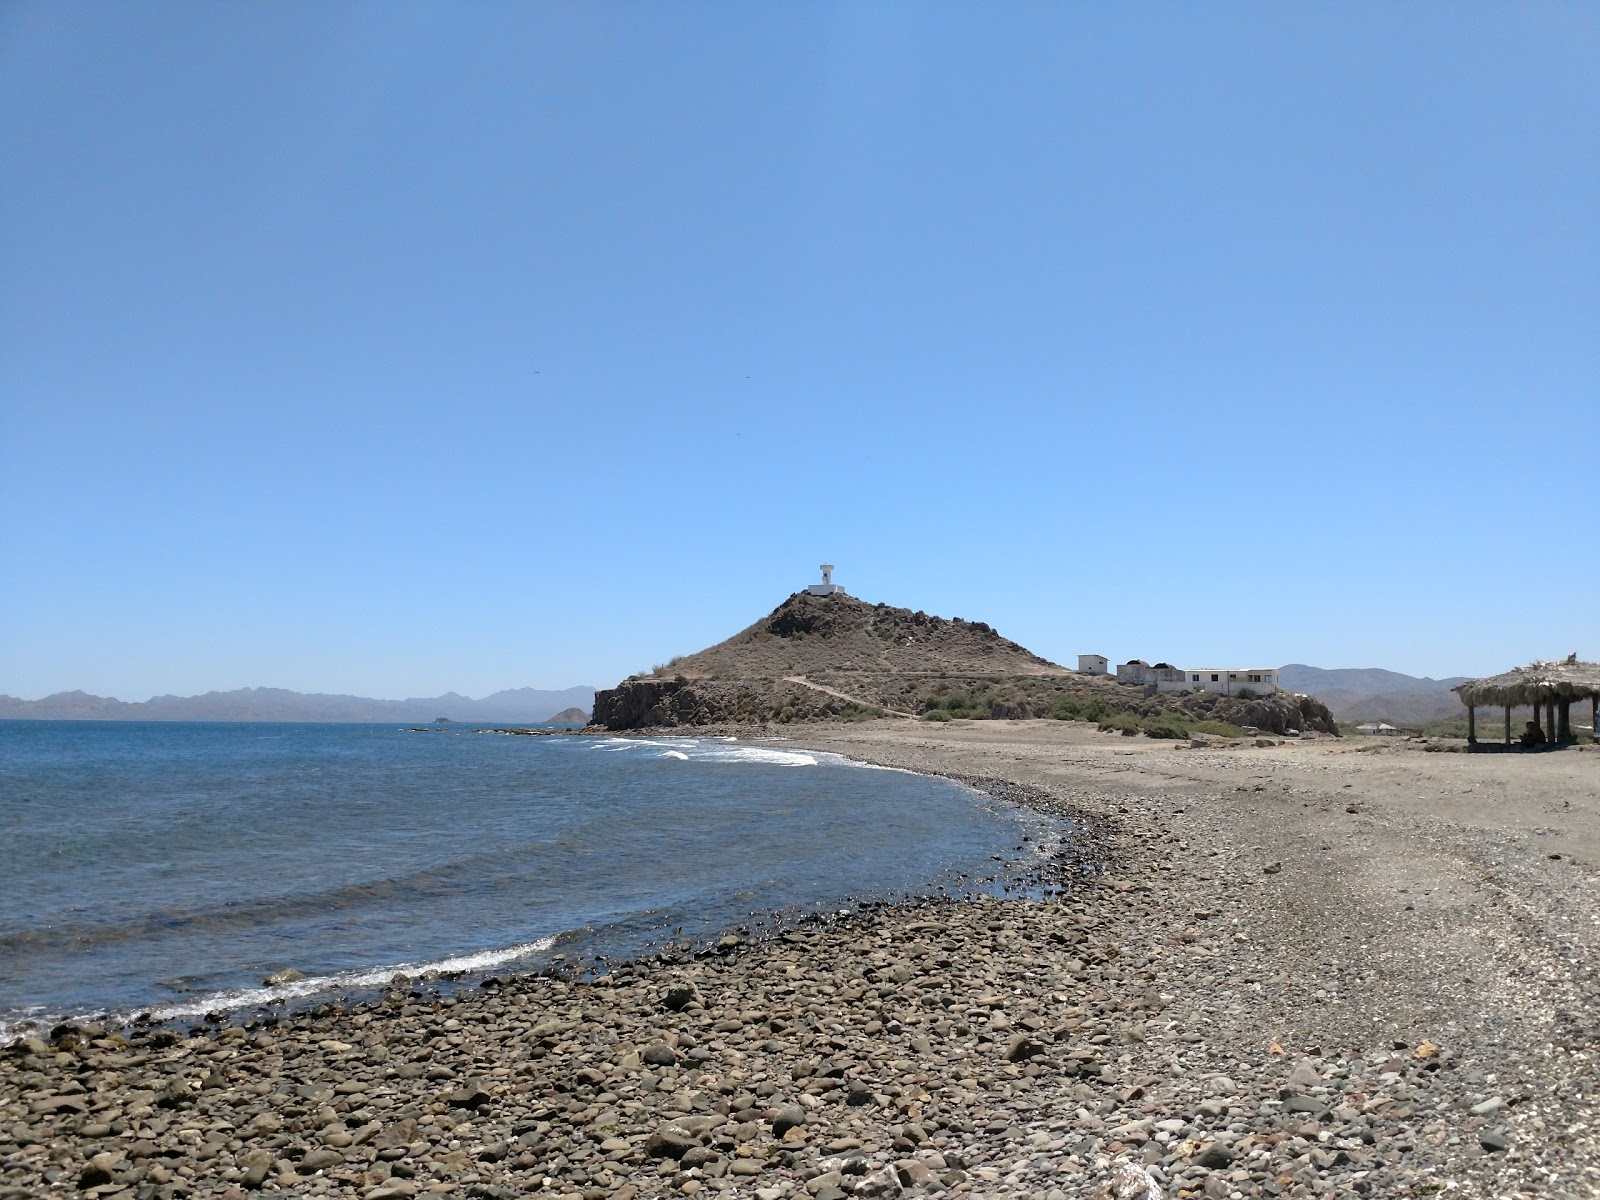 Playa Mulege'in fotoğrafı gri çakıl taşı yüzey ile